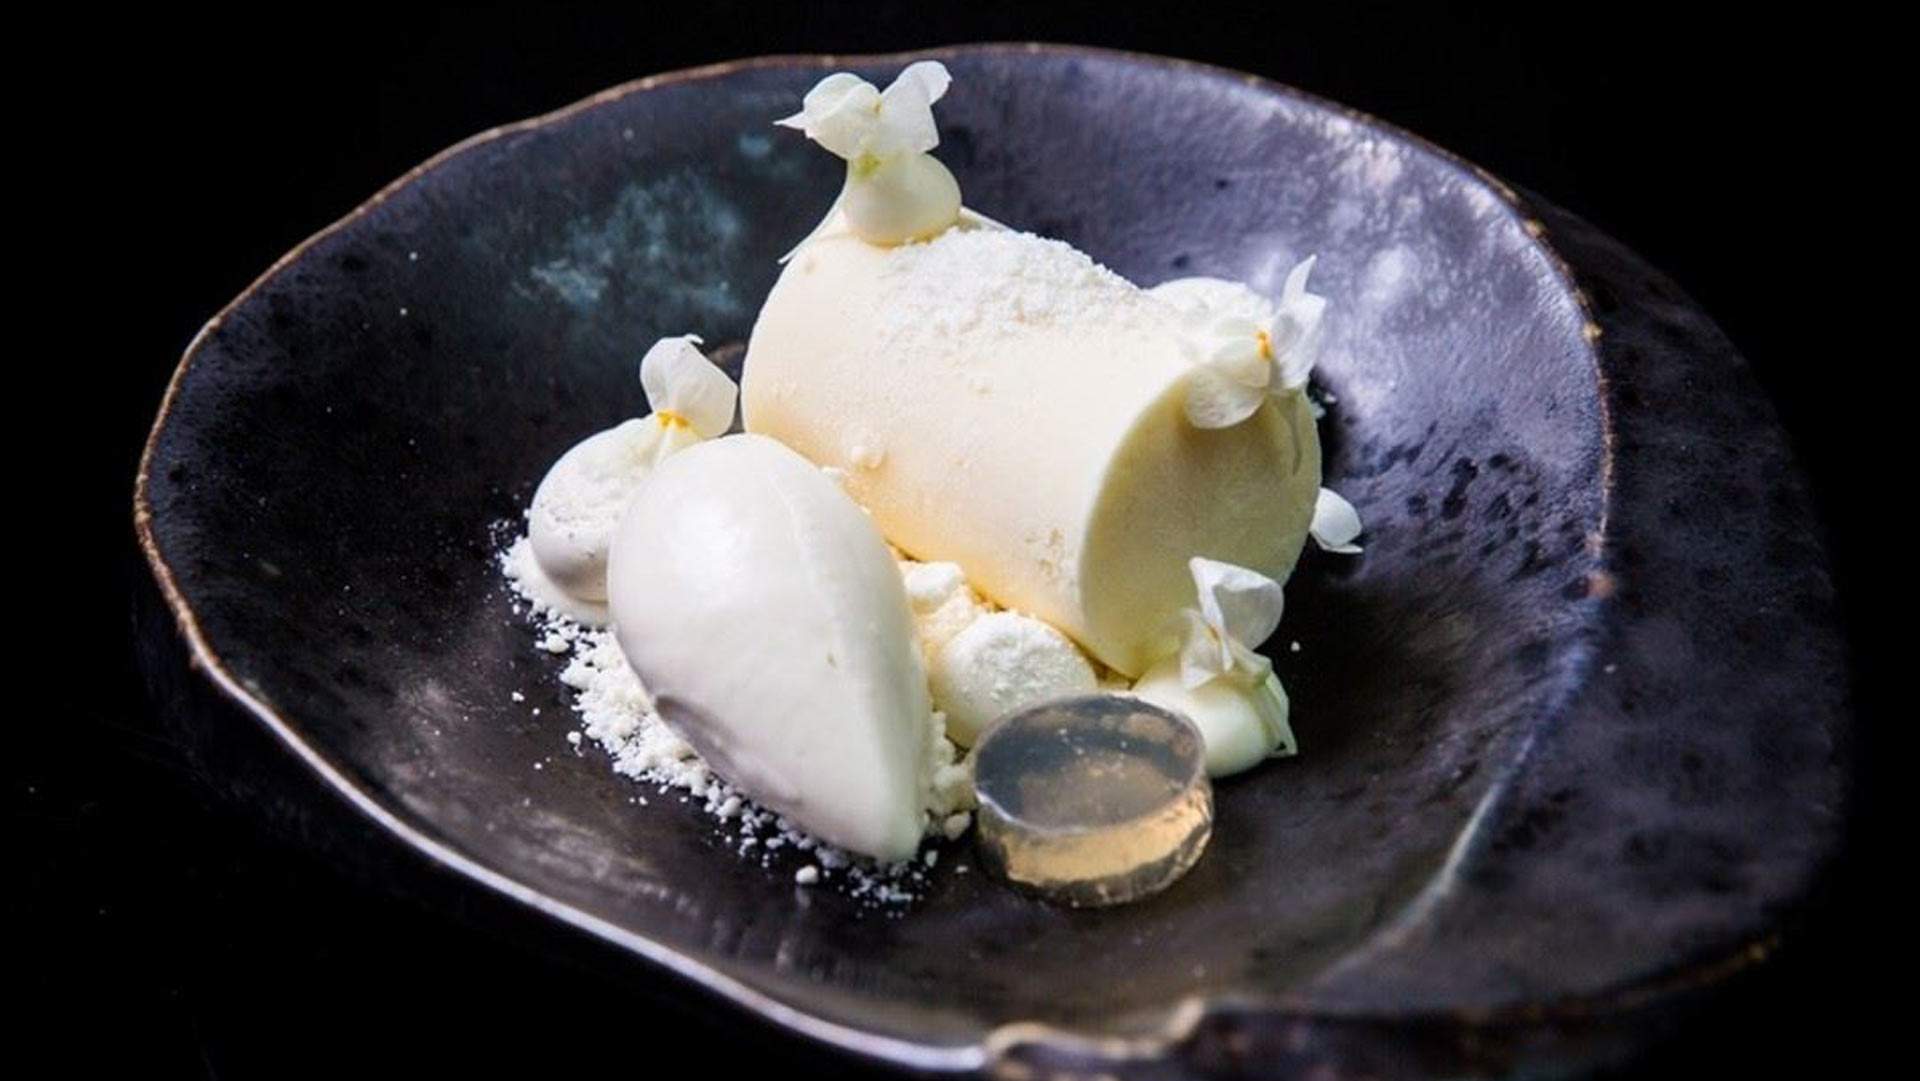 'MasterChef' Dessert King Reynold Poernomo's Sydney Shops Are Delivering That White Noise Dish